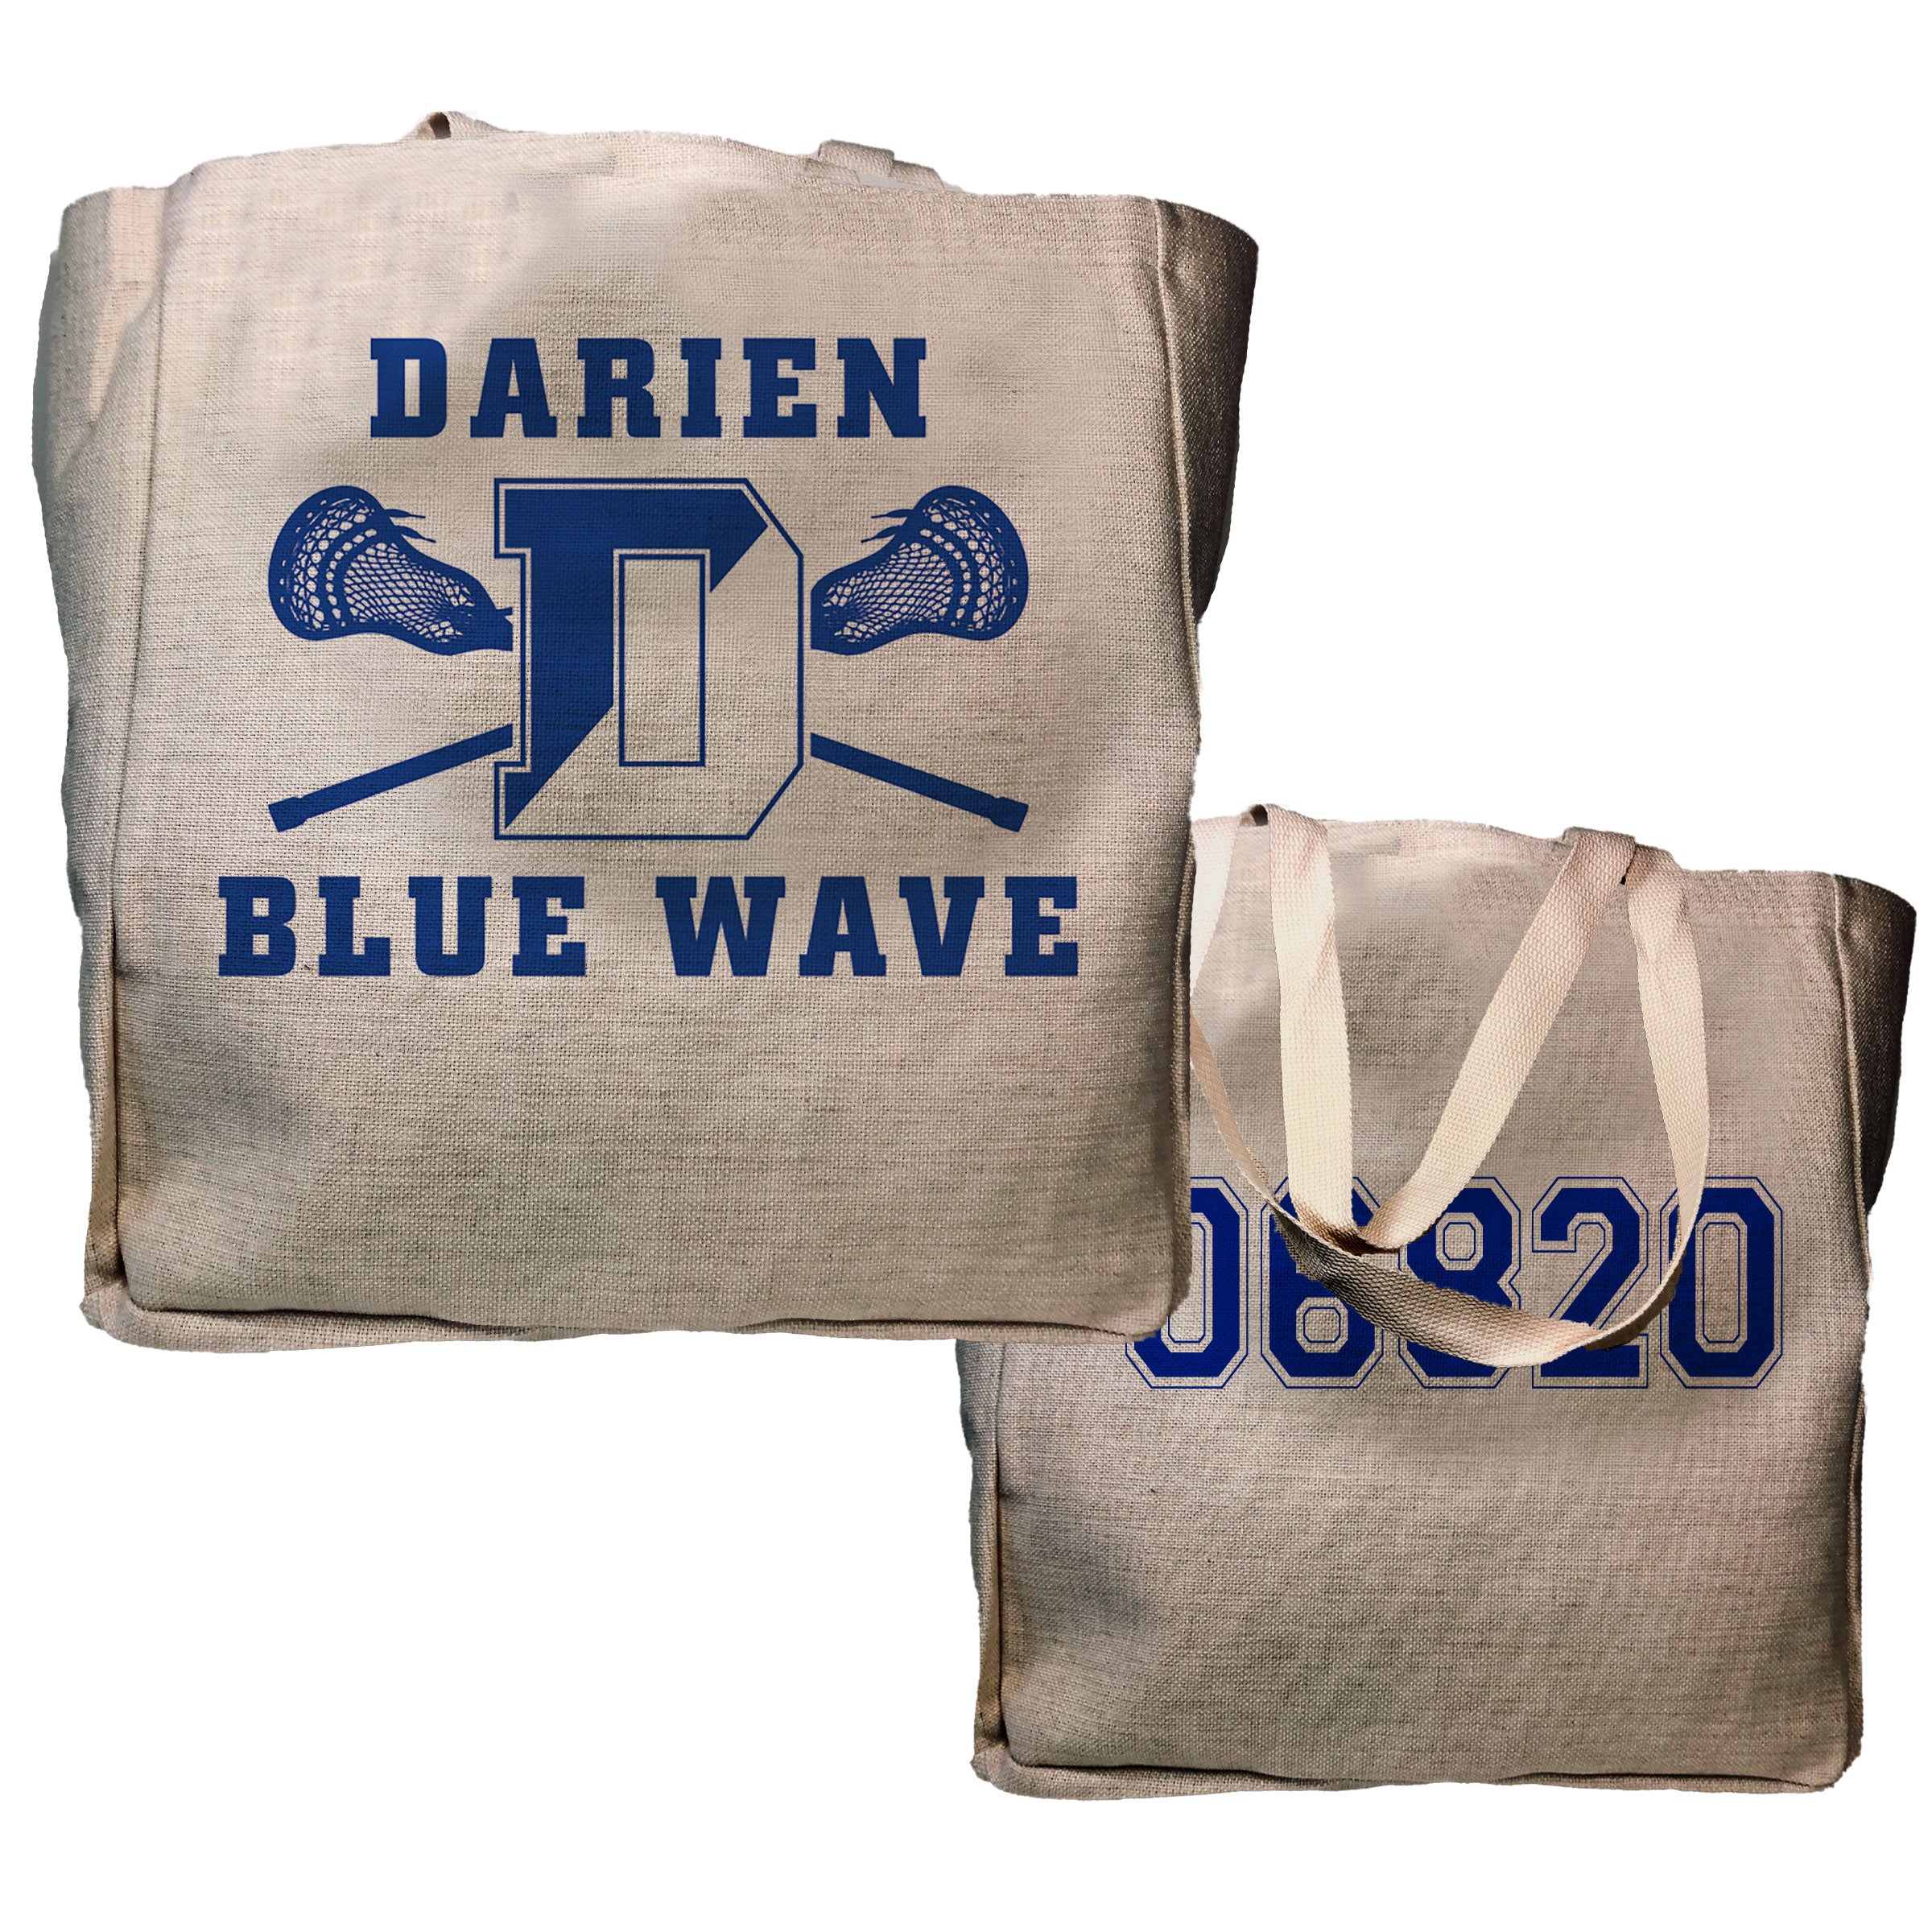 Blue Wave Lacrosse Tote Bag - Darien Zip